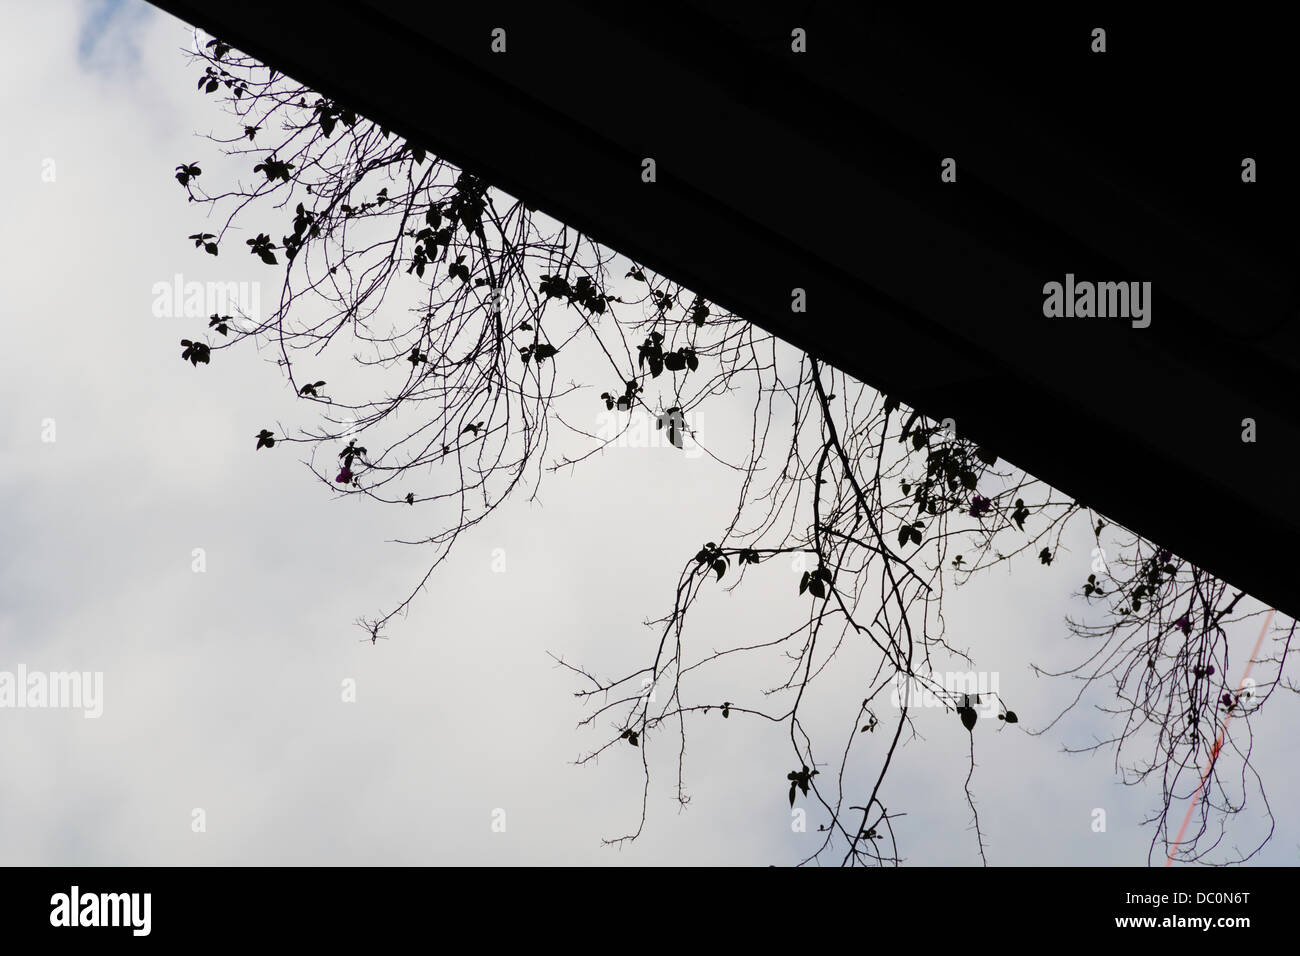 Les petites branches des plantes entrant sur une corniche, vue de dessous montrant fond de nuages dans le ciel Banque D'Images